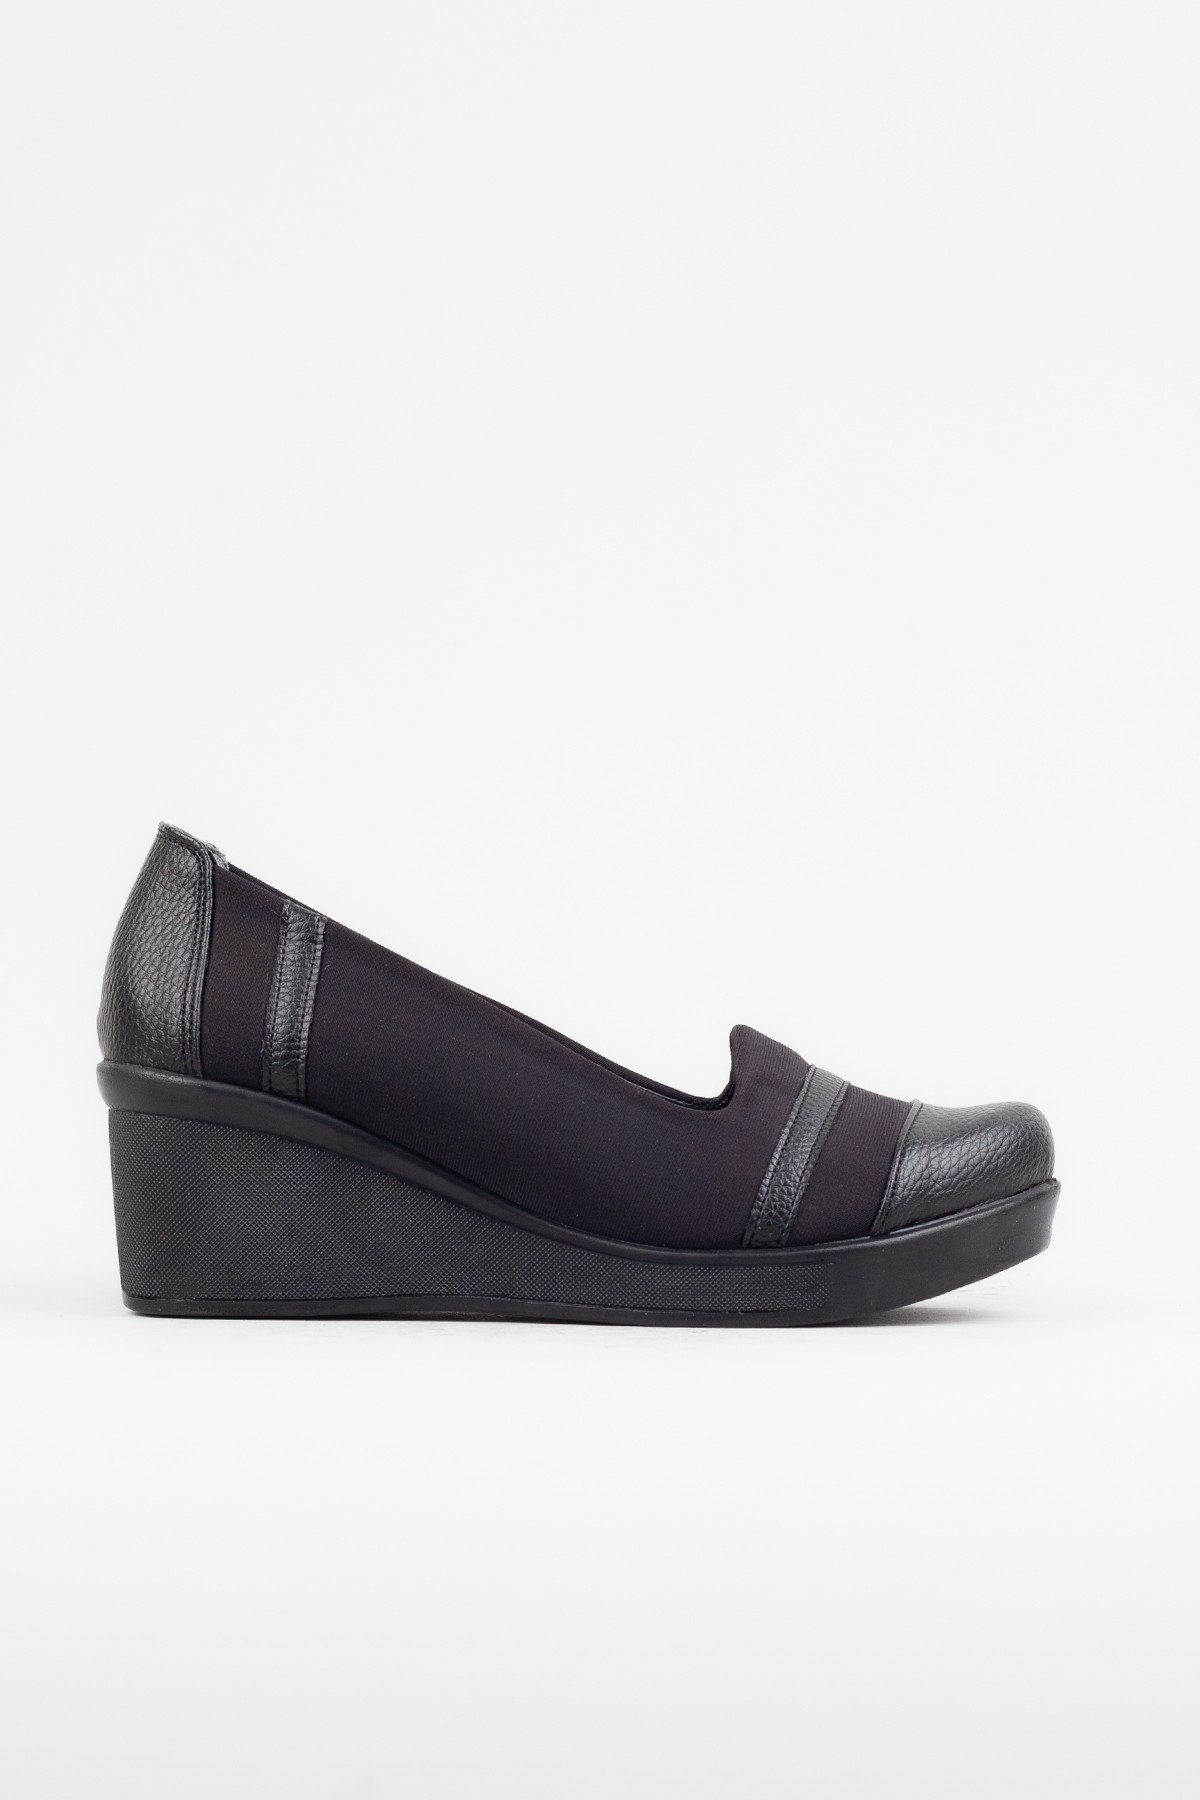 Kadın Siyah Dolgu Topuklu Ayakkabı